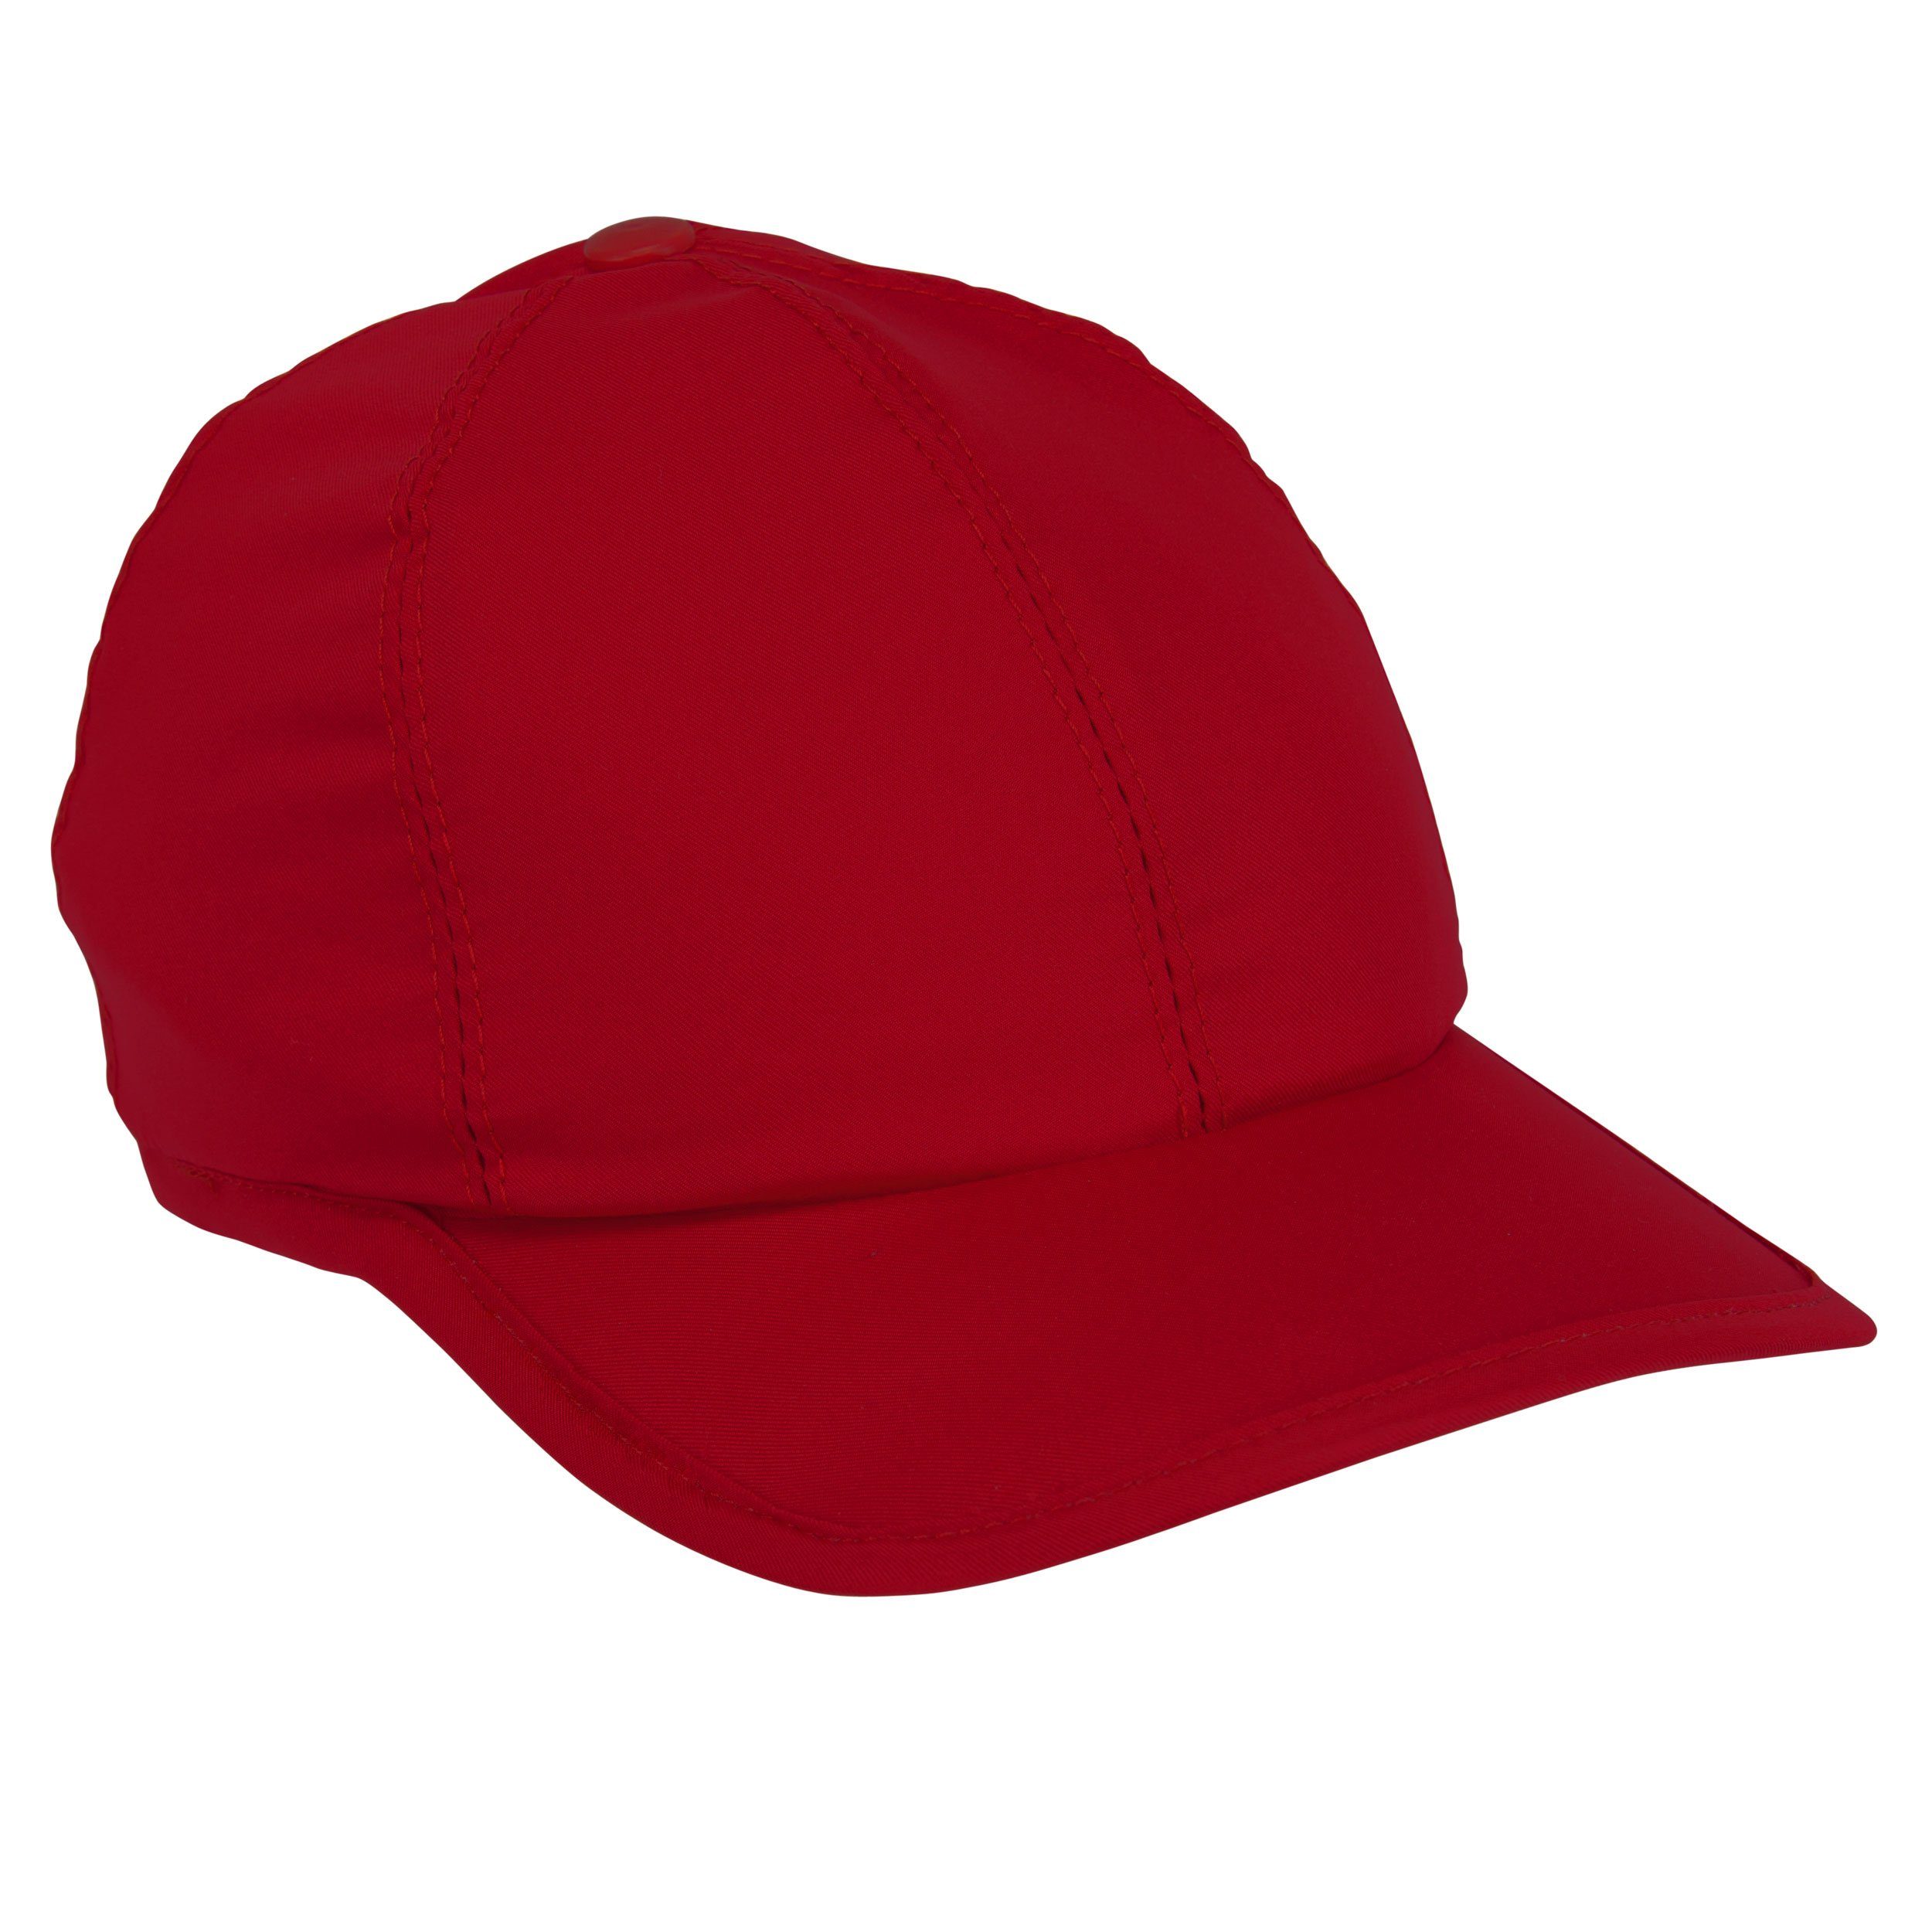 - Klimaanlage zum Aktivierung Baseball Anziehen durch Wasser mit Rot E.COOLINE Mütze aktiv - kühlende Kühlung Cap